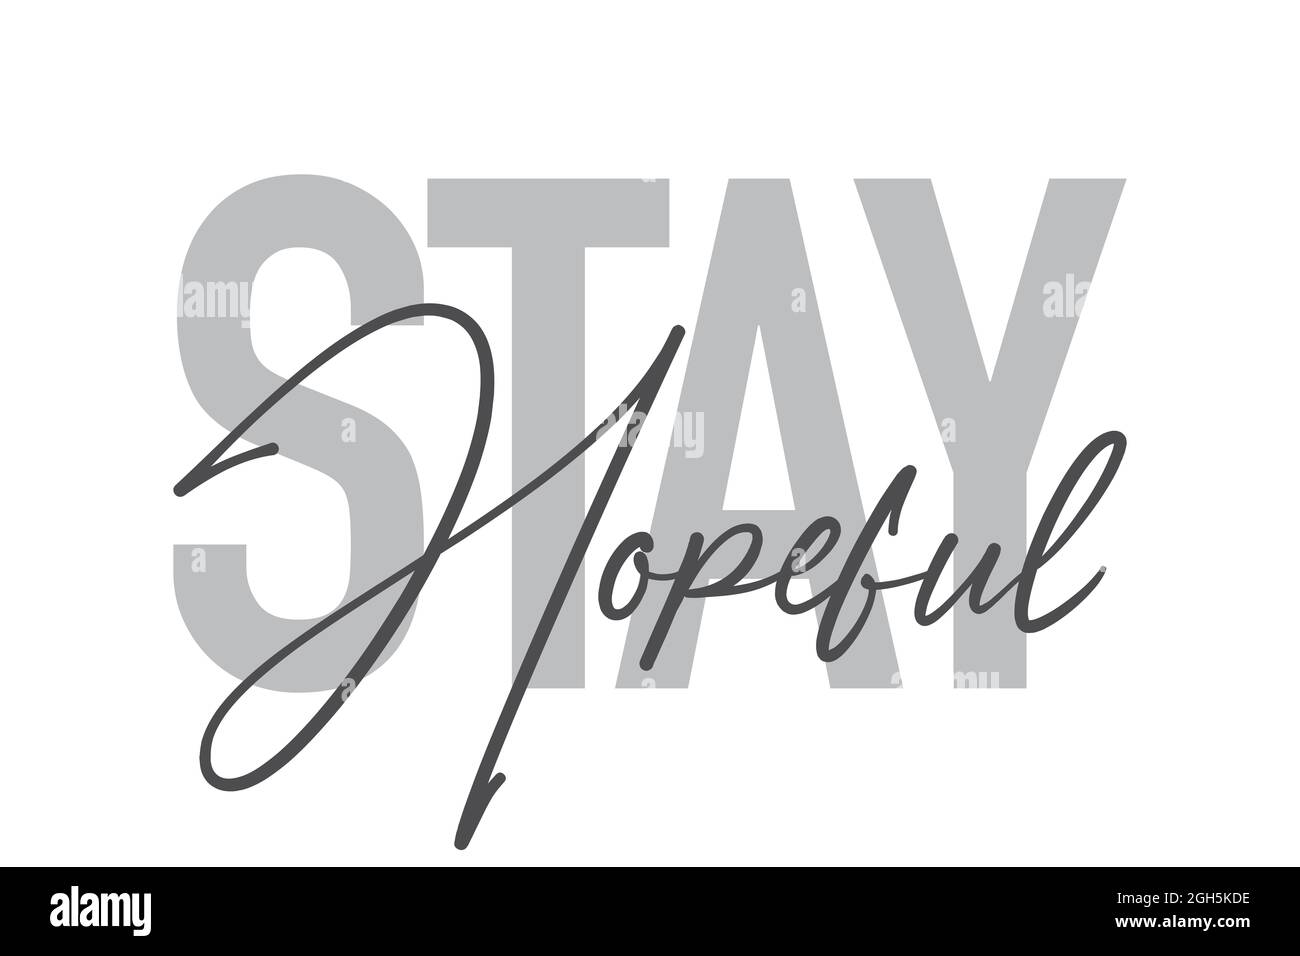 Modernes, einfaches, minimalistisches typografisches Design eines Sprichwort „Stay Hopeful“ in Grautönen. Coole, urbane, trendige und verspielte Grafik-Vektorgrafik mit Stockfoto